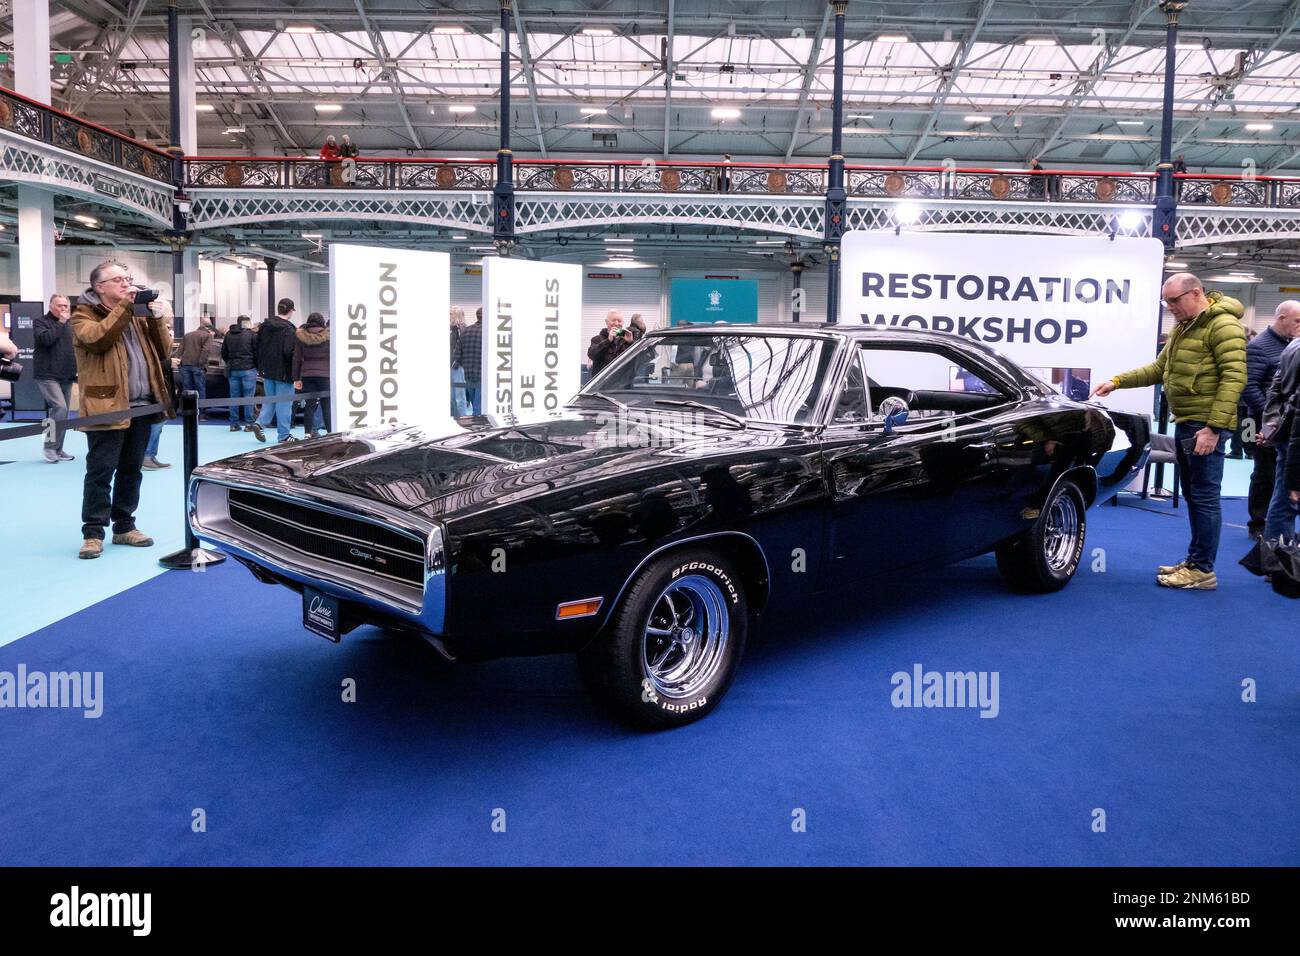 Die London Classic Car Show 2023 im Olympia London Stockfoto